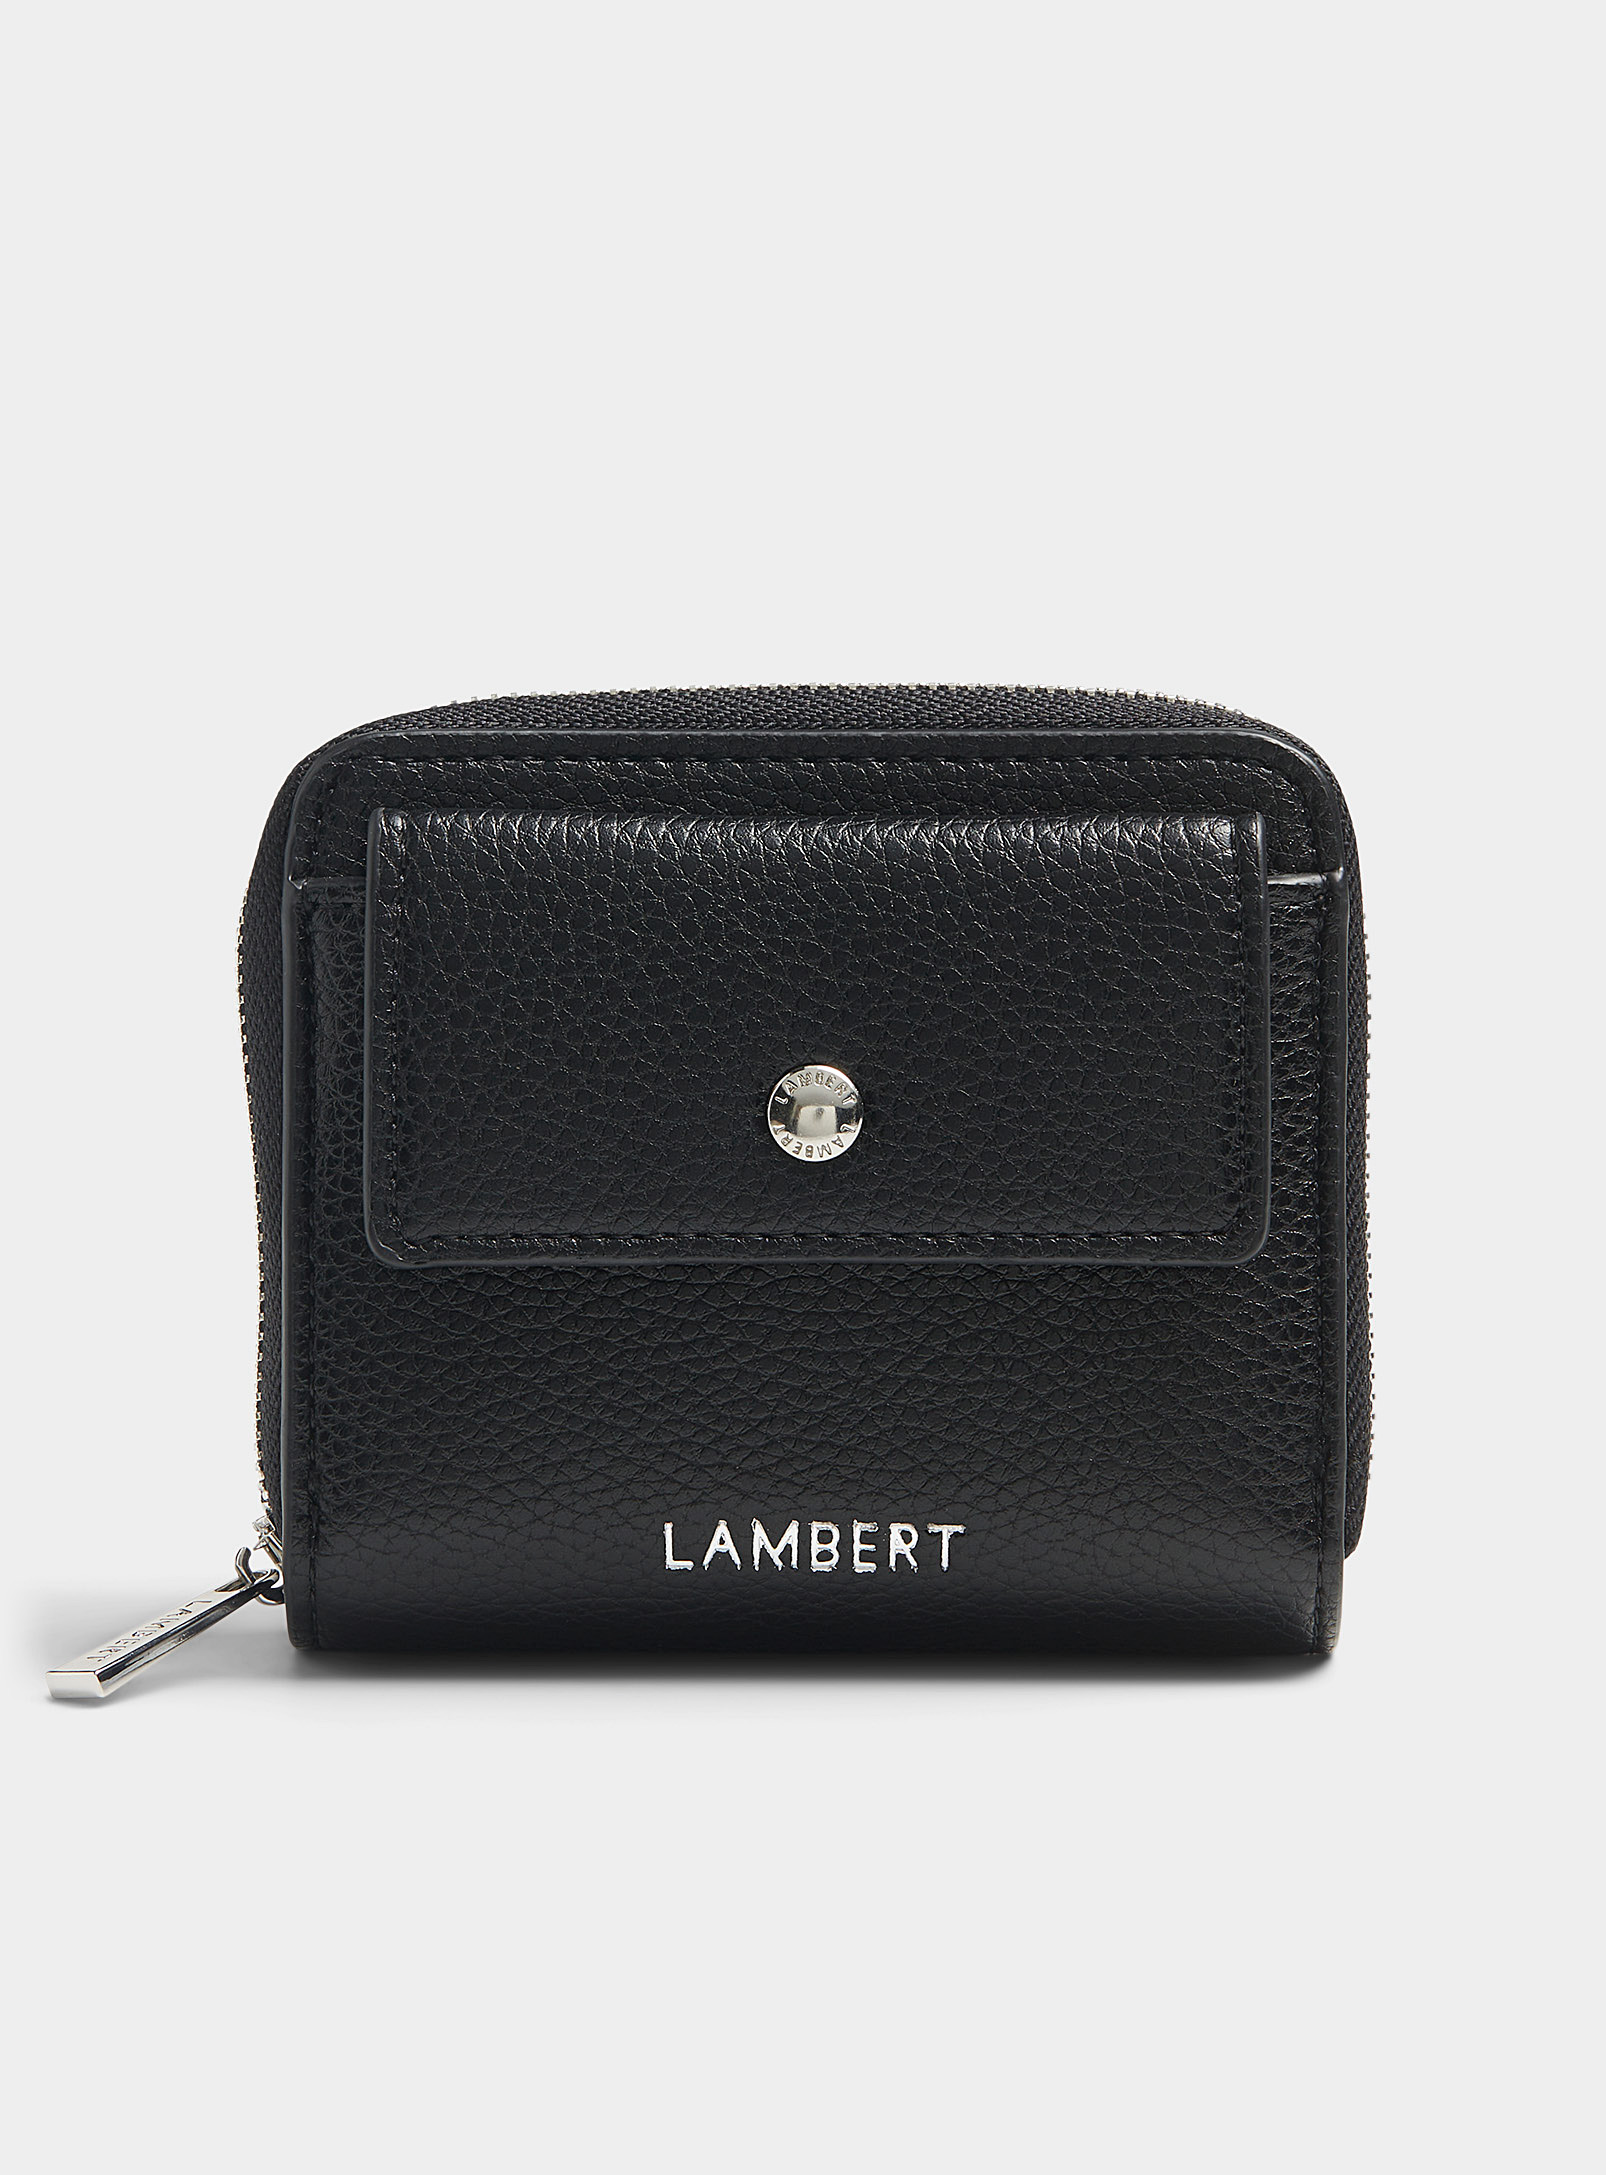 Lambert - Le portefeuille minimaliste Nikki